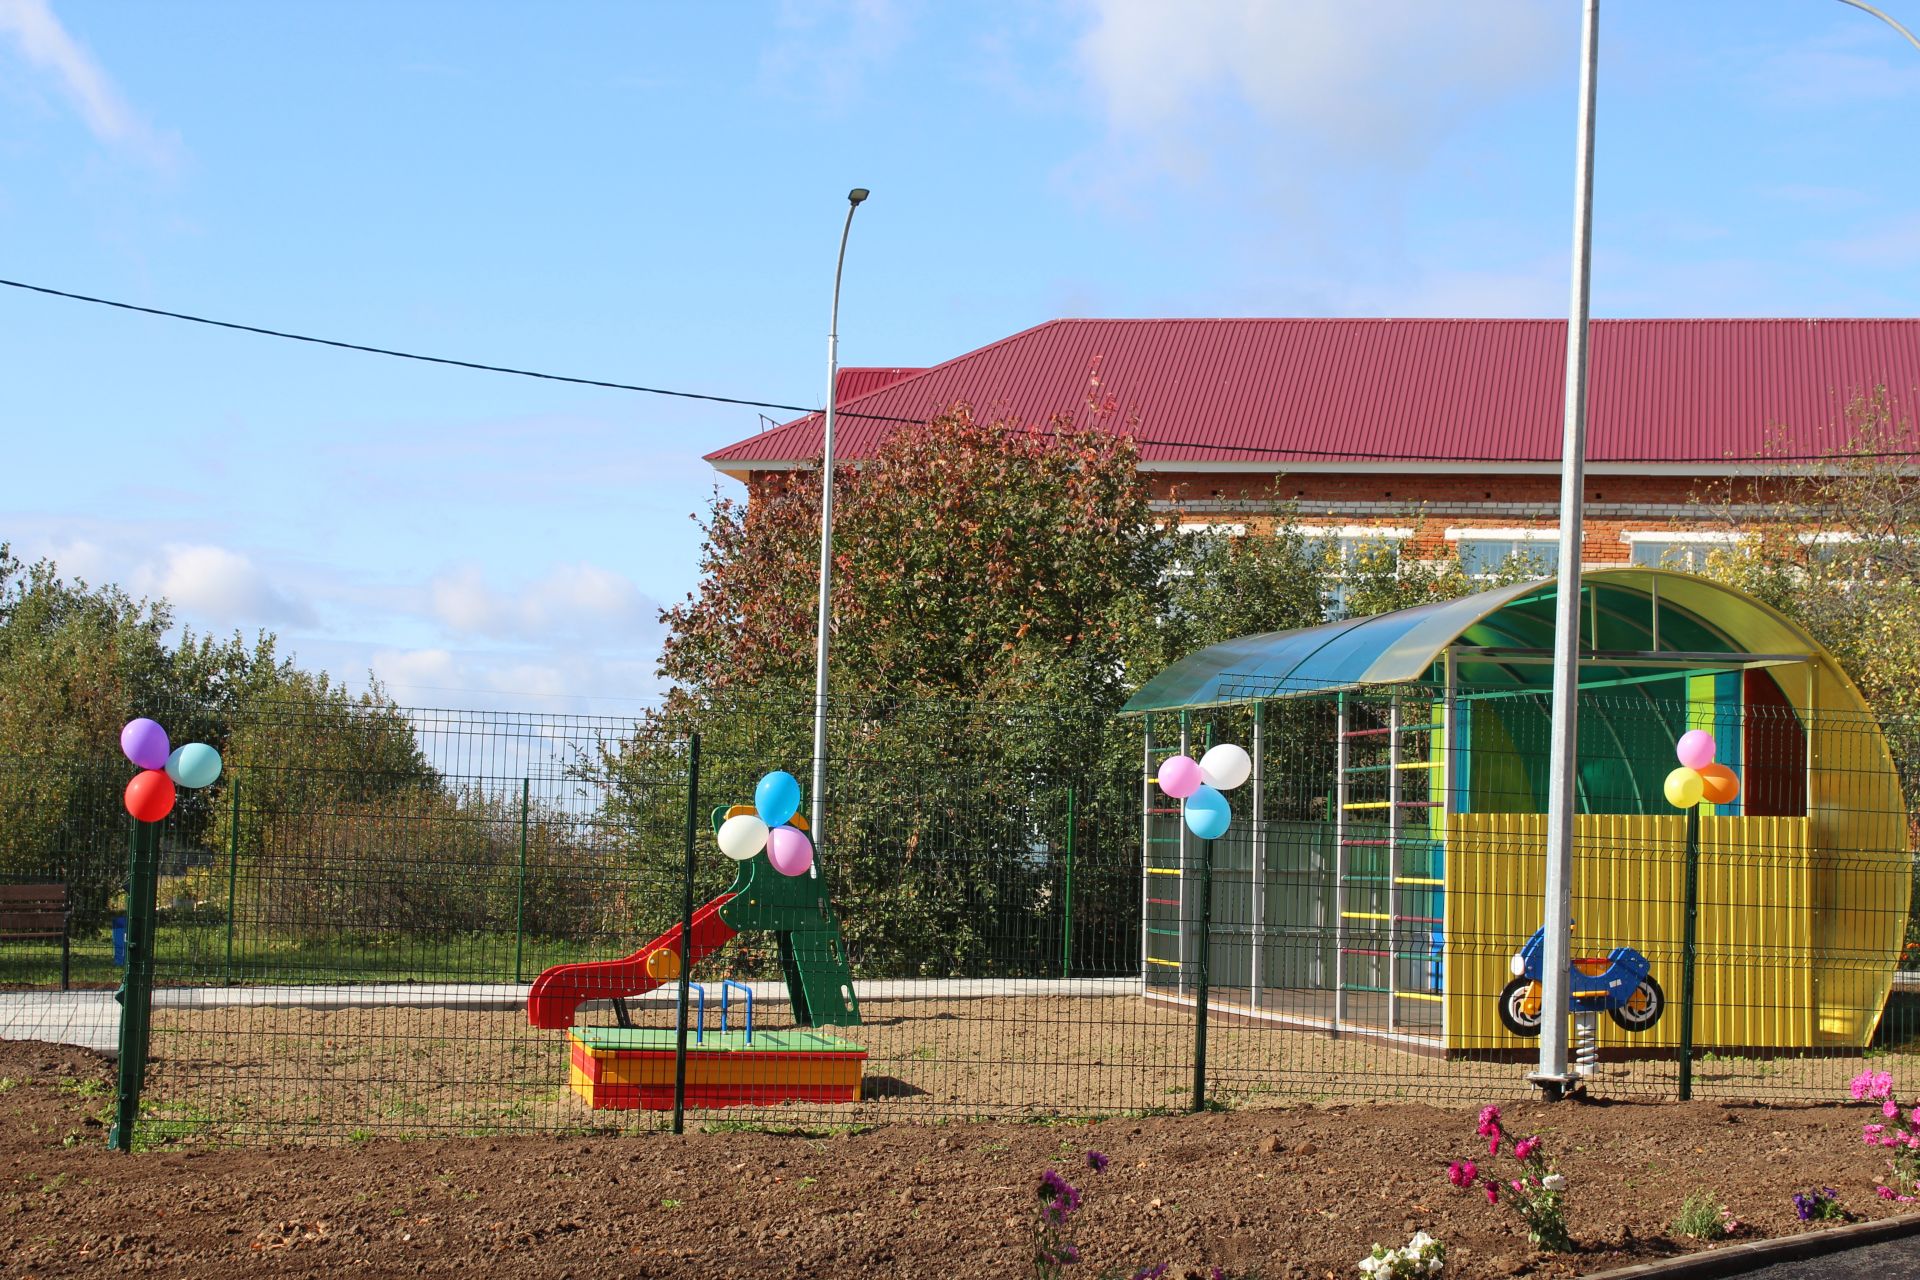 В деревне Поч.Сутер состоялось открытие детского сада